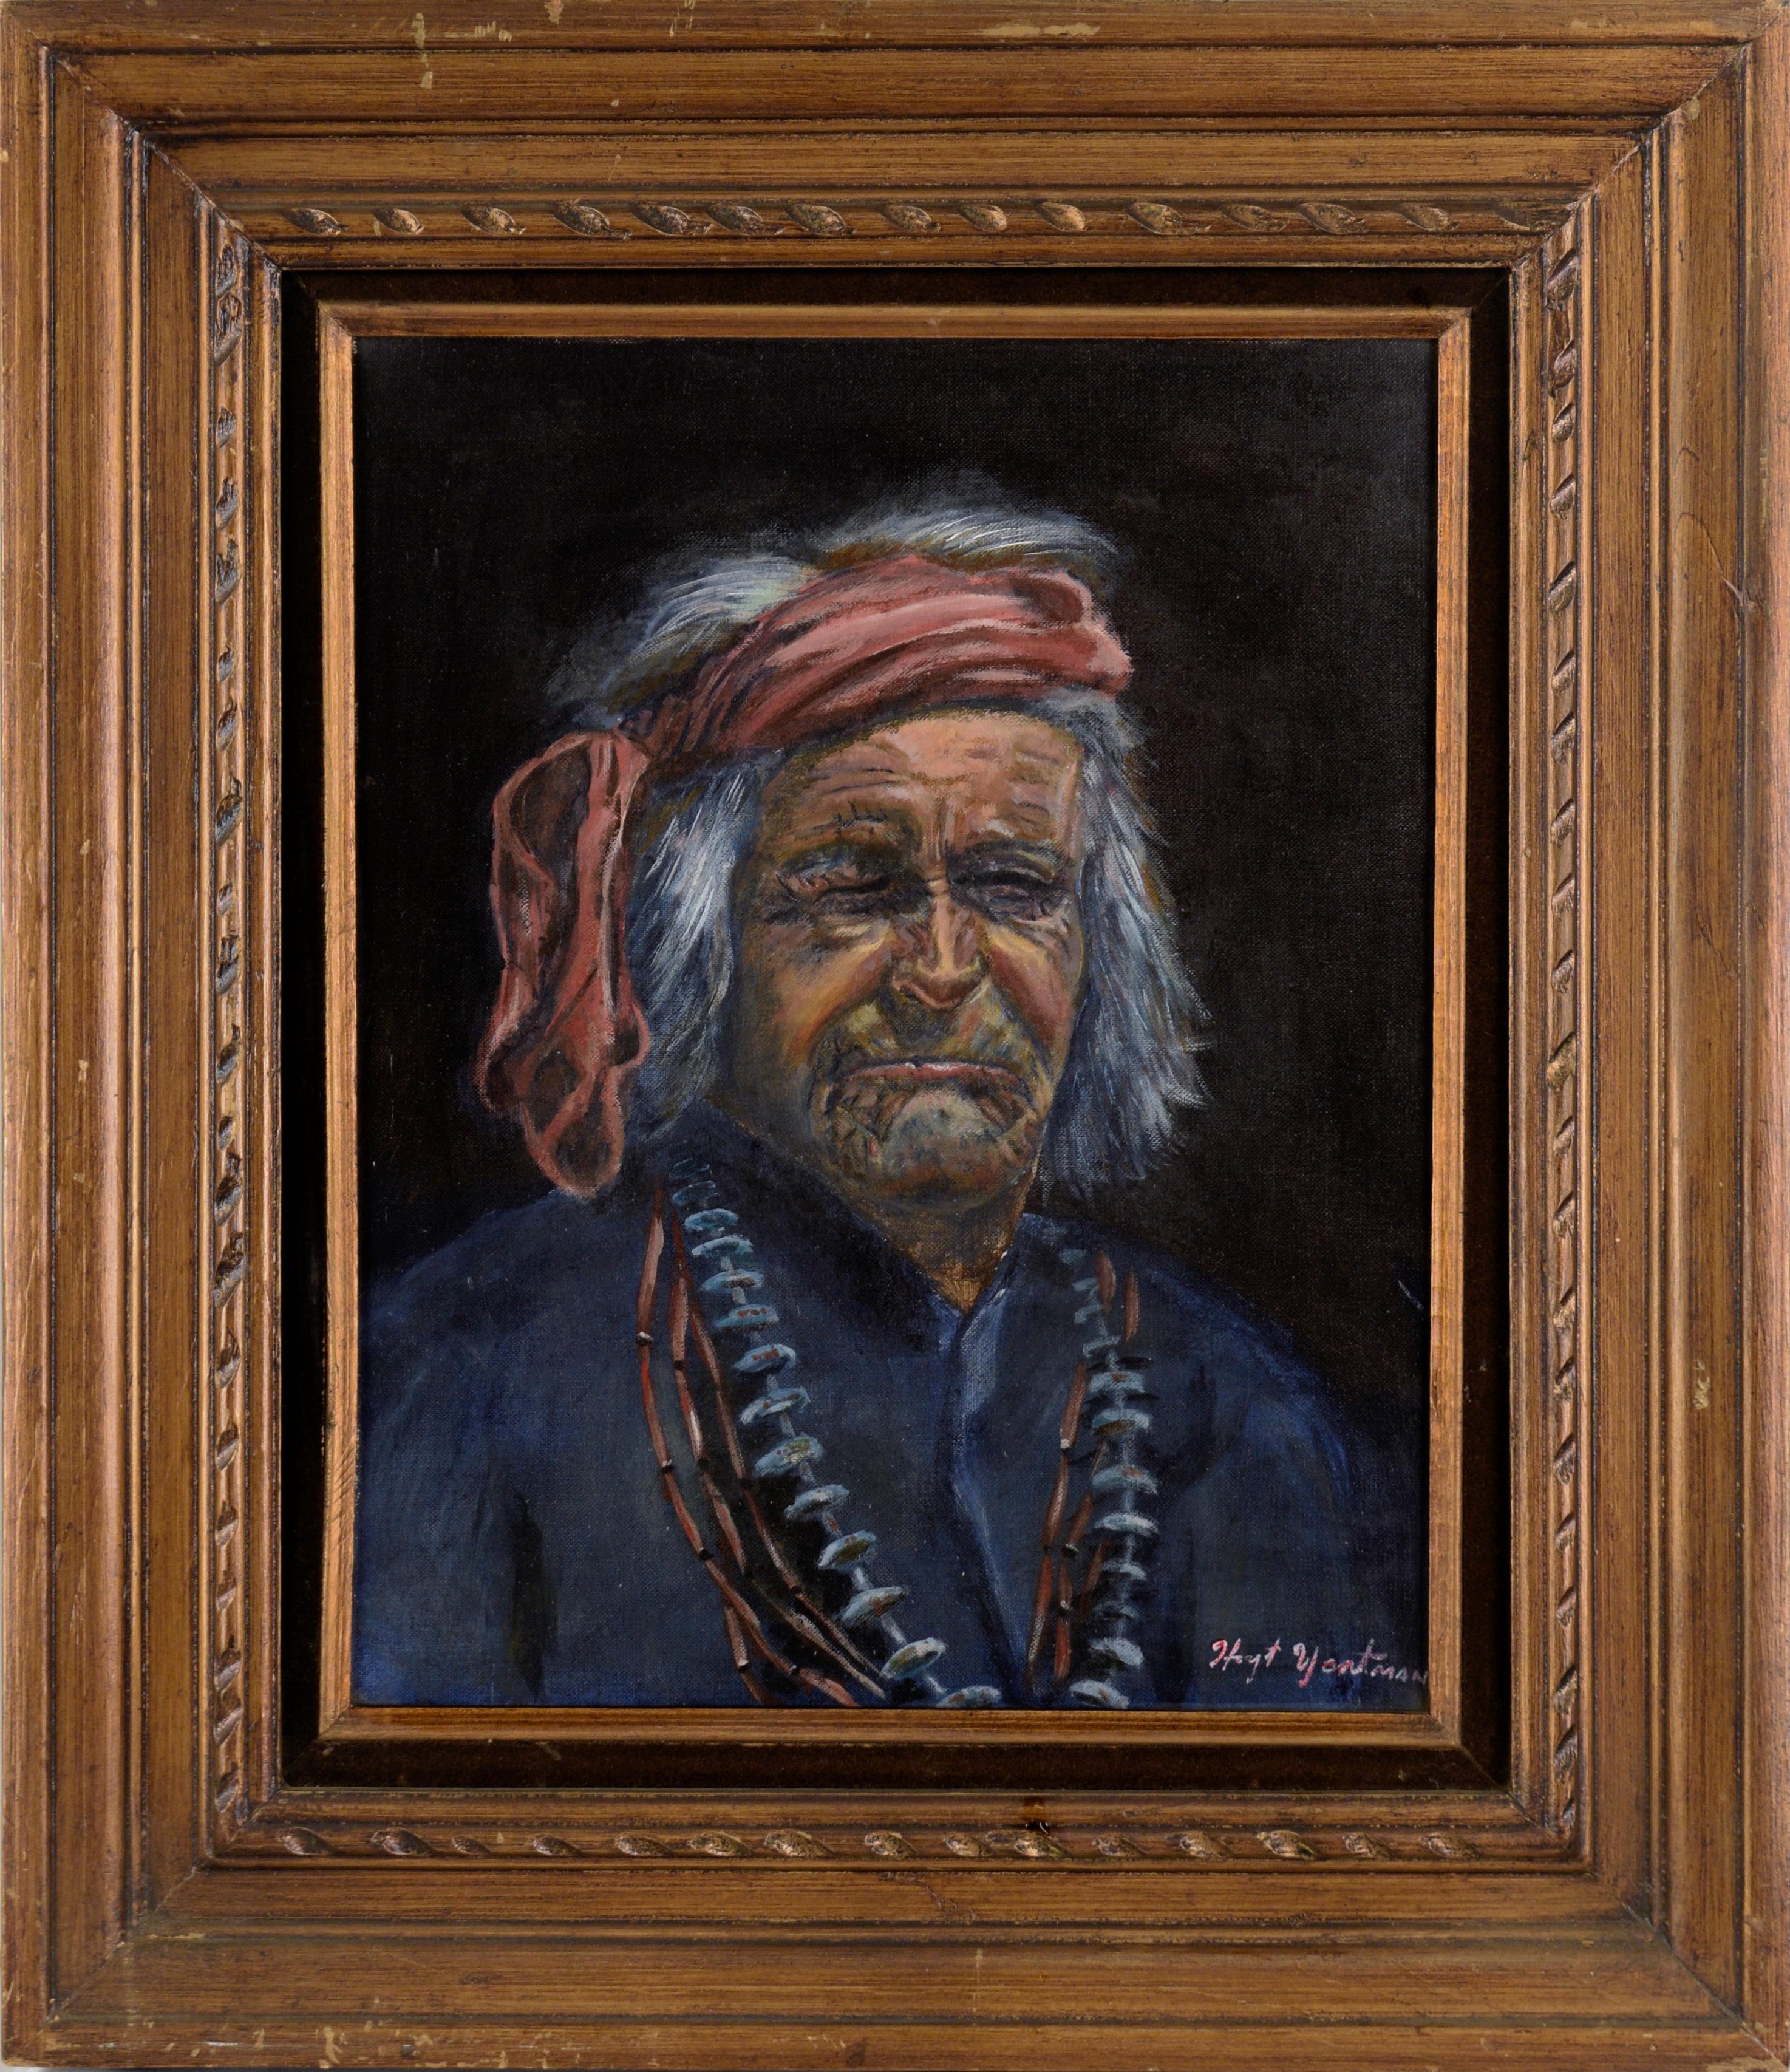 Hoyt Yeatman Jr. Portrait Painting – Porträt einer älteren amerikanischen Ureinwohnerin in Öl auf Künstlerkarton